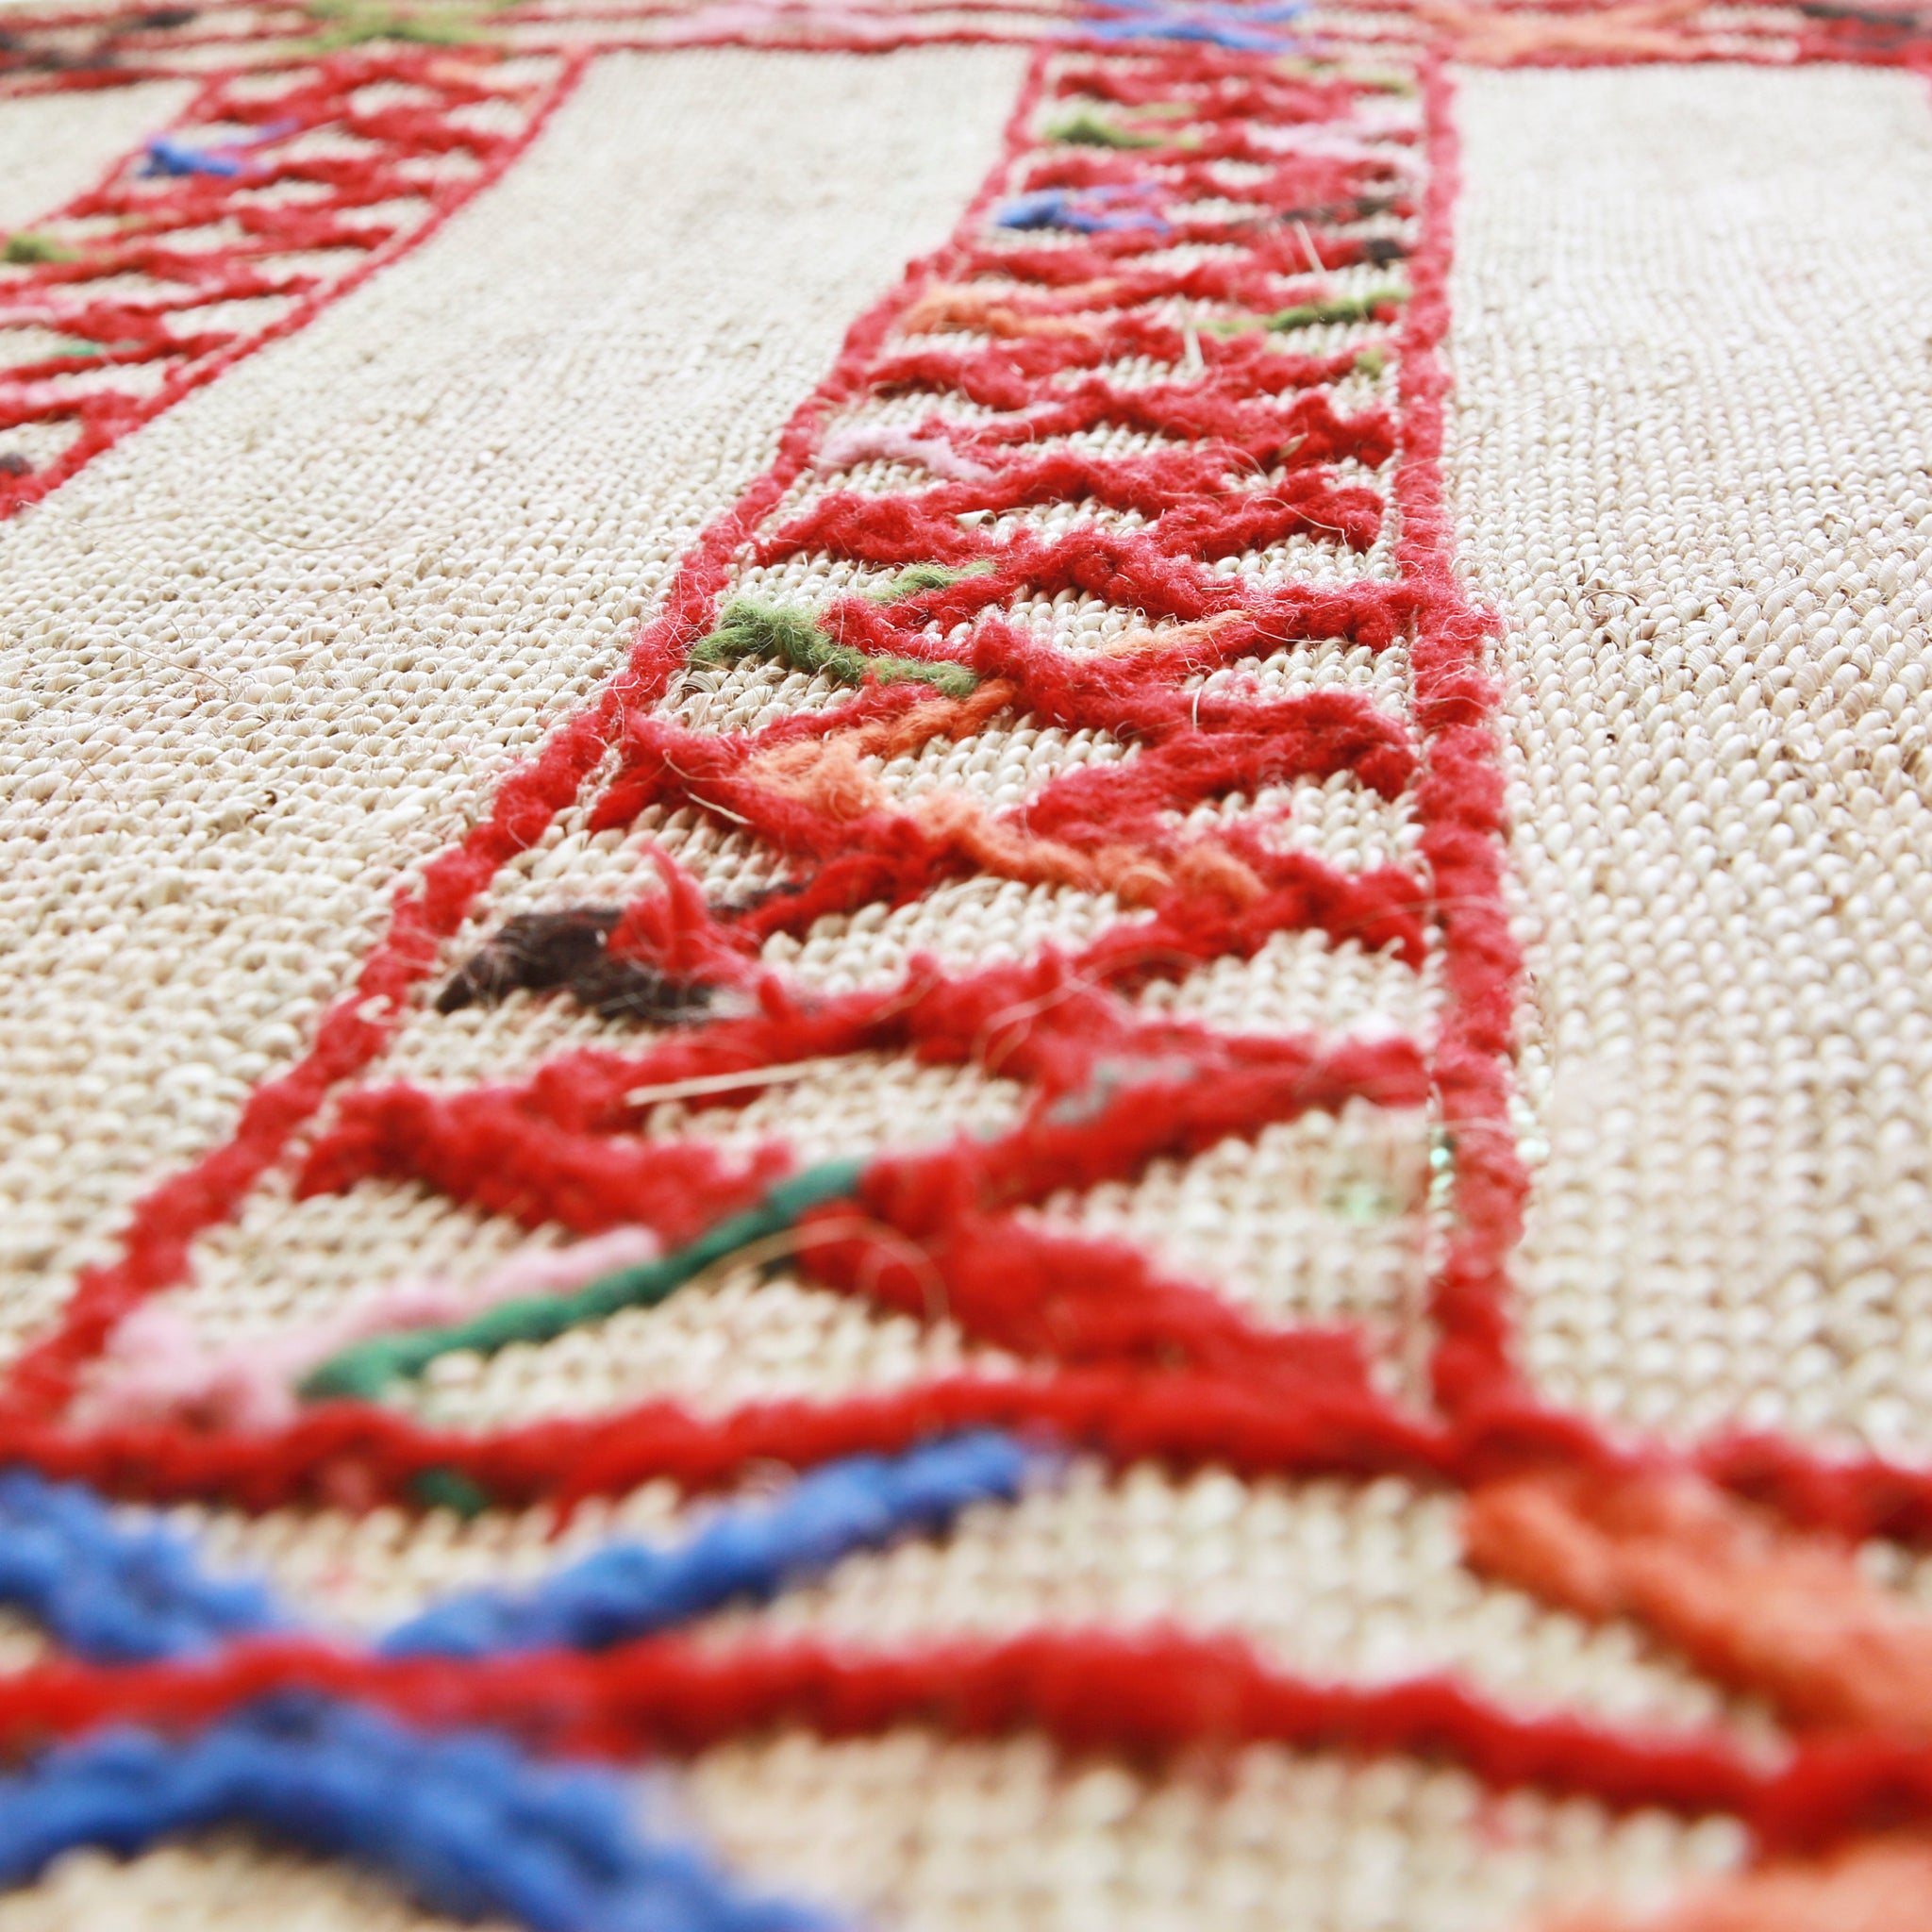 dettaglio di una stuoia hassira in paglia di palma con ricami in lana rossa blu verde e rosa